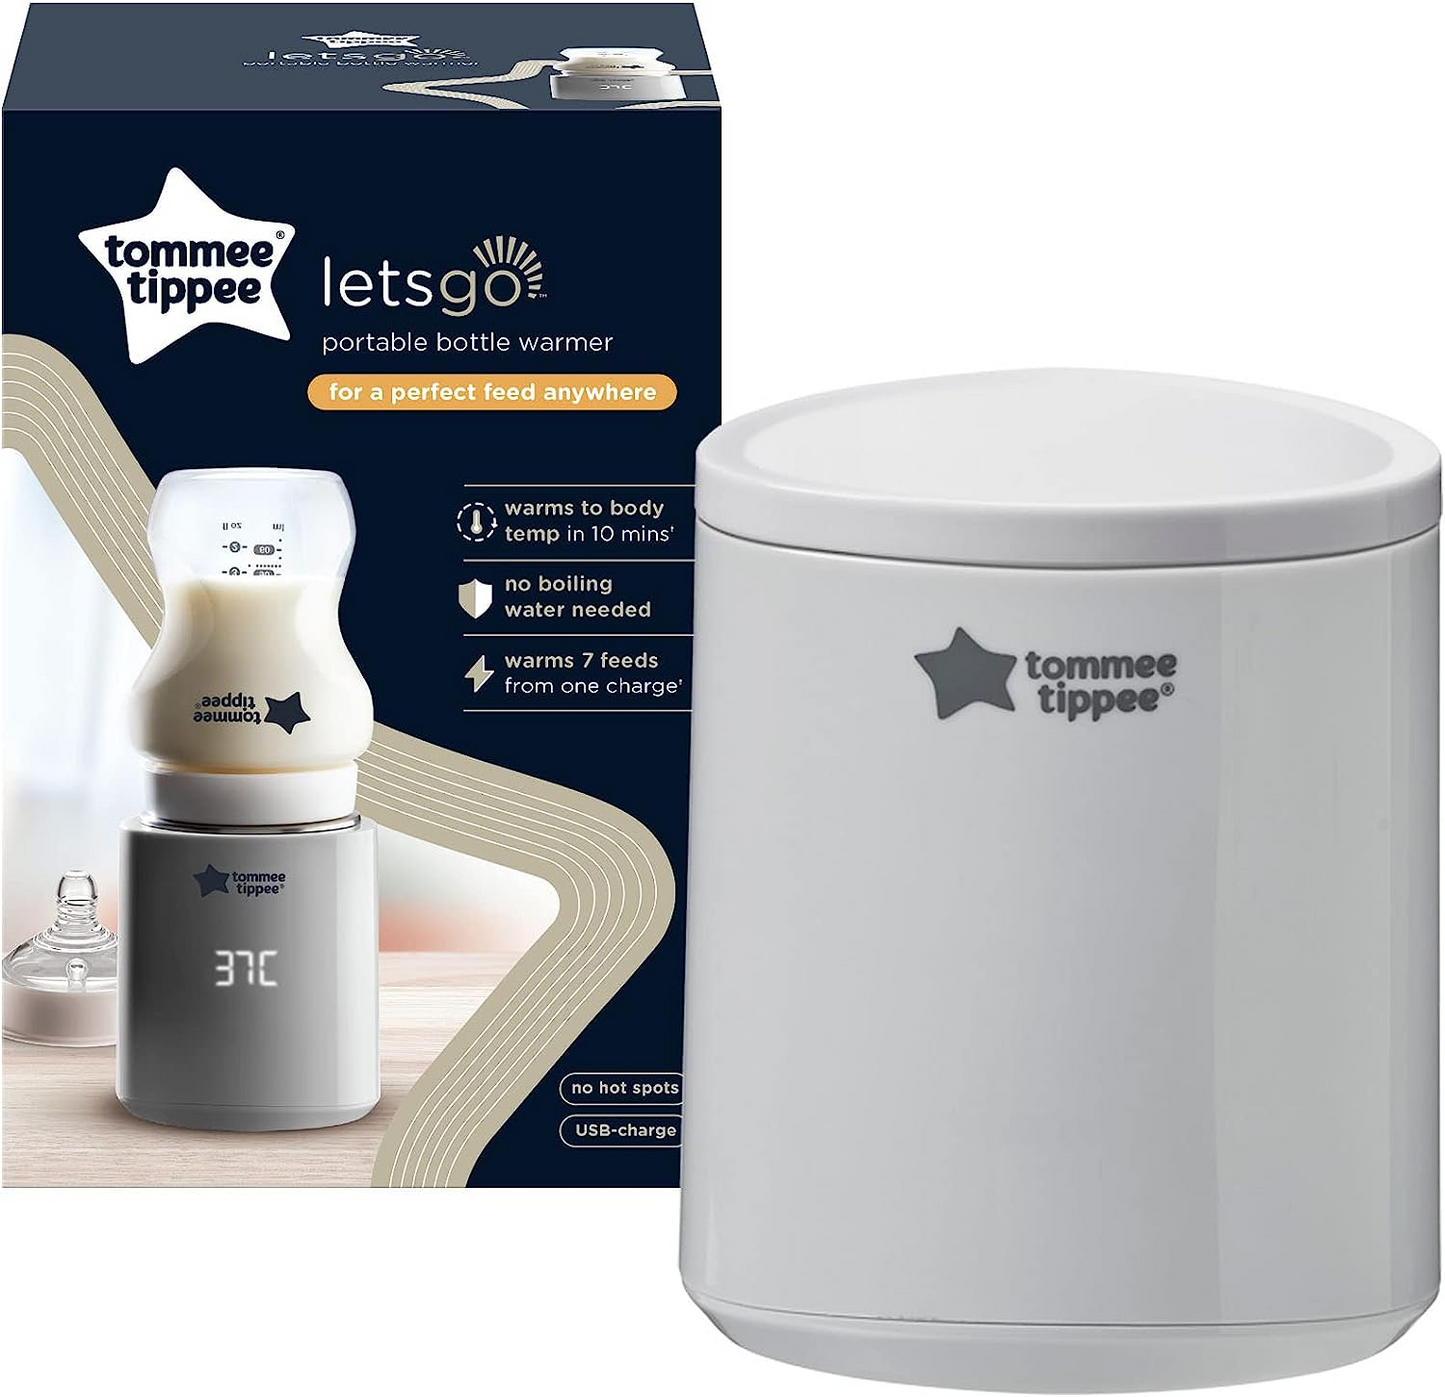 Tommee Tippee Aquecedor de mamadeiras portátil LetsGo, recarregável por USB, aquecedor de mamadeiras elétrico, leve e adequado para viagens